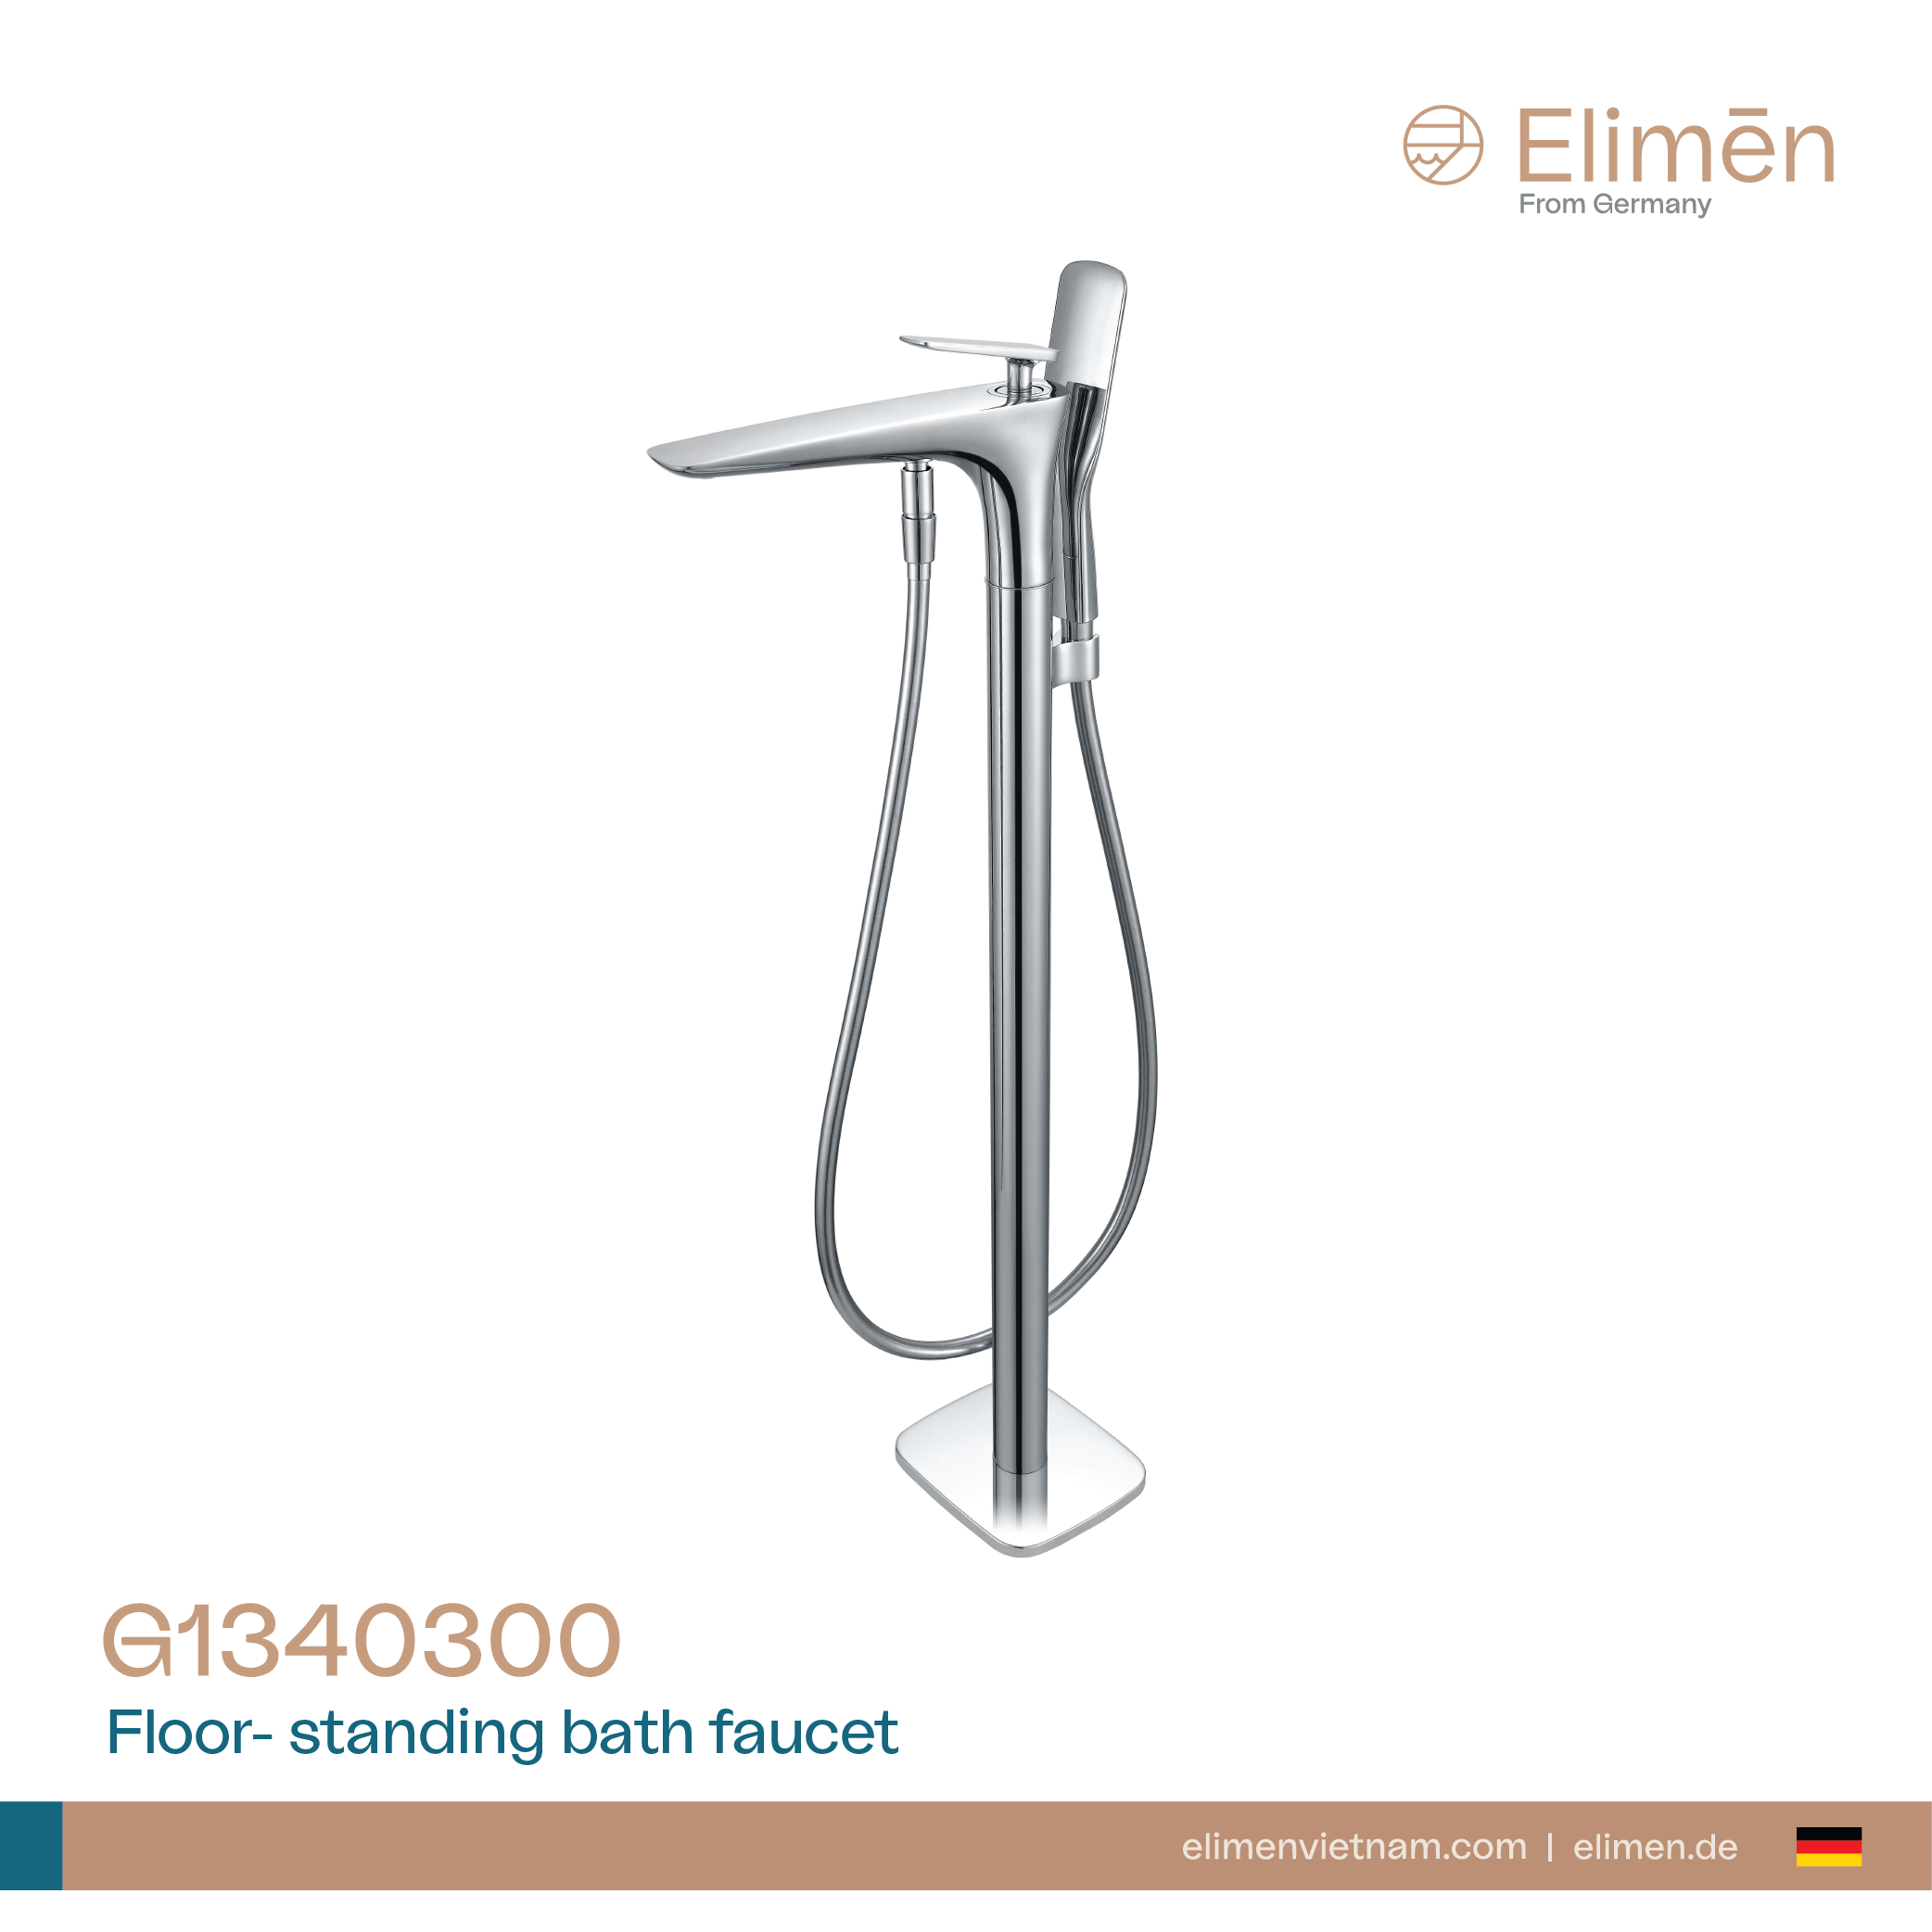 Vòi bồn tắm Elimen gắn sàn - Mã G1340300